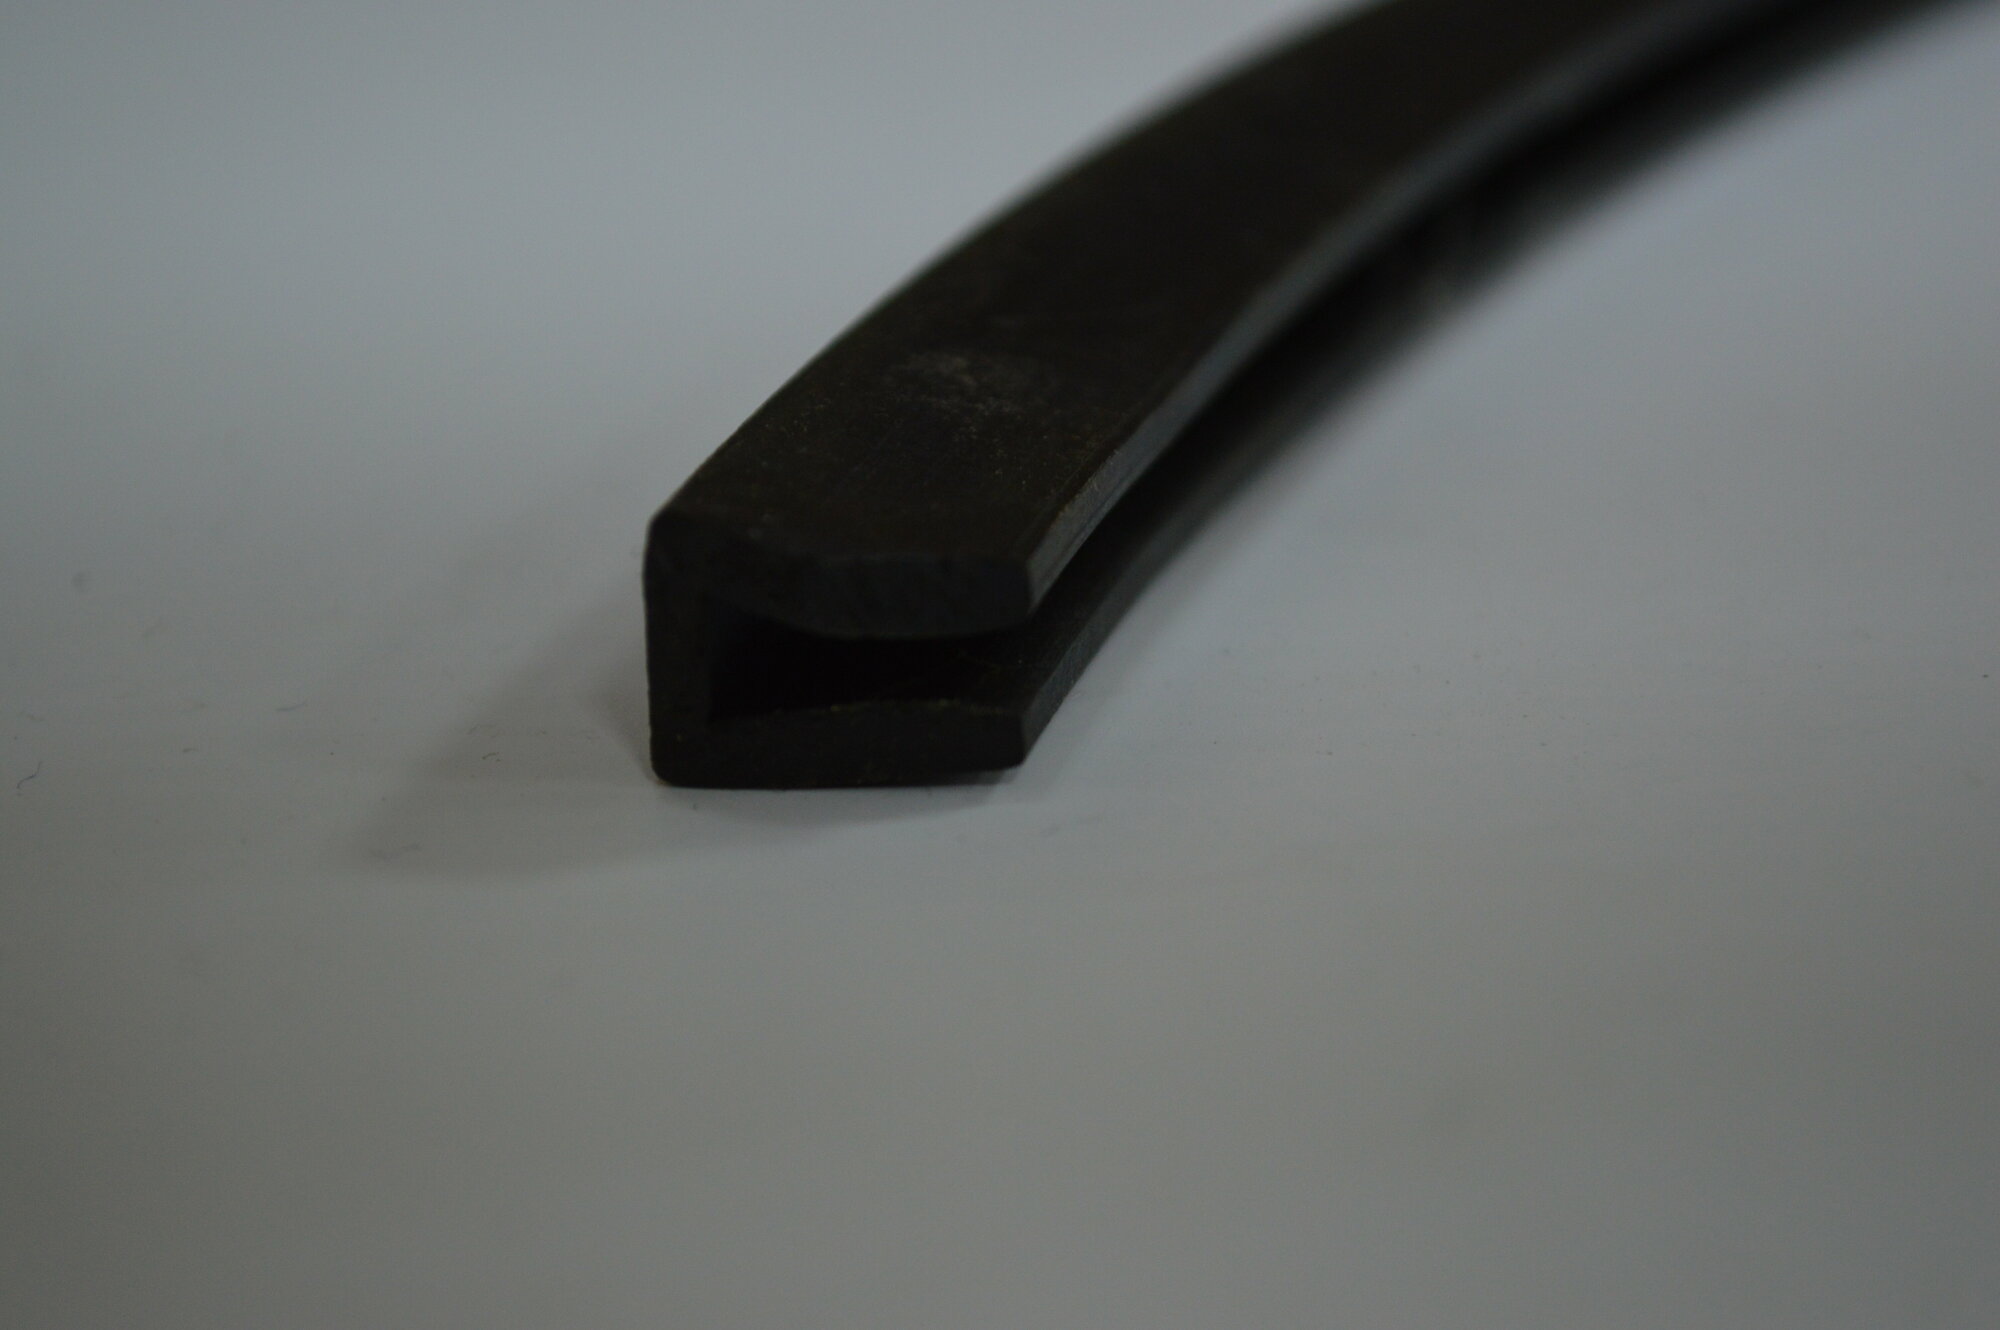 Профиль резиновый черный П-образный для уплотнения стекол и метала. Толщина стекла 6 мм. Длина 3 метра.